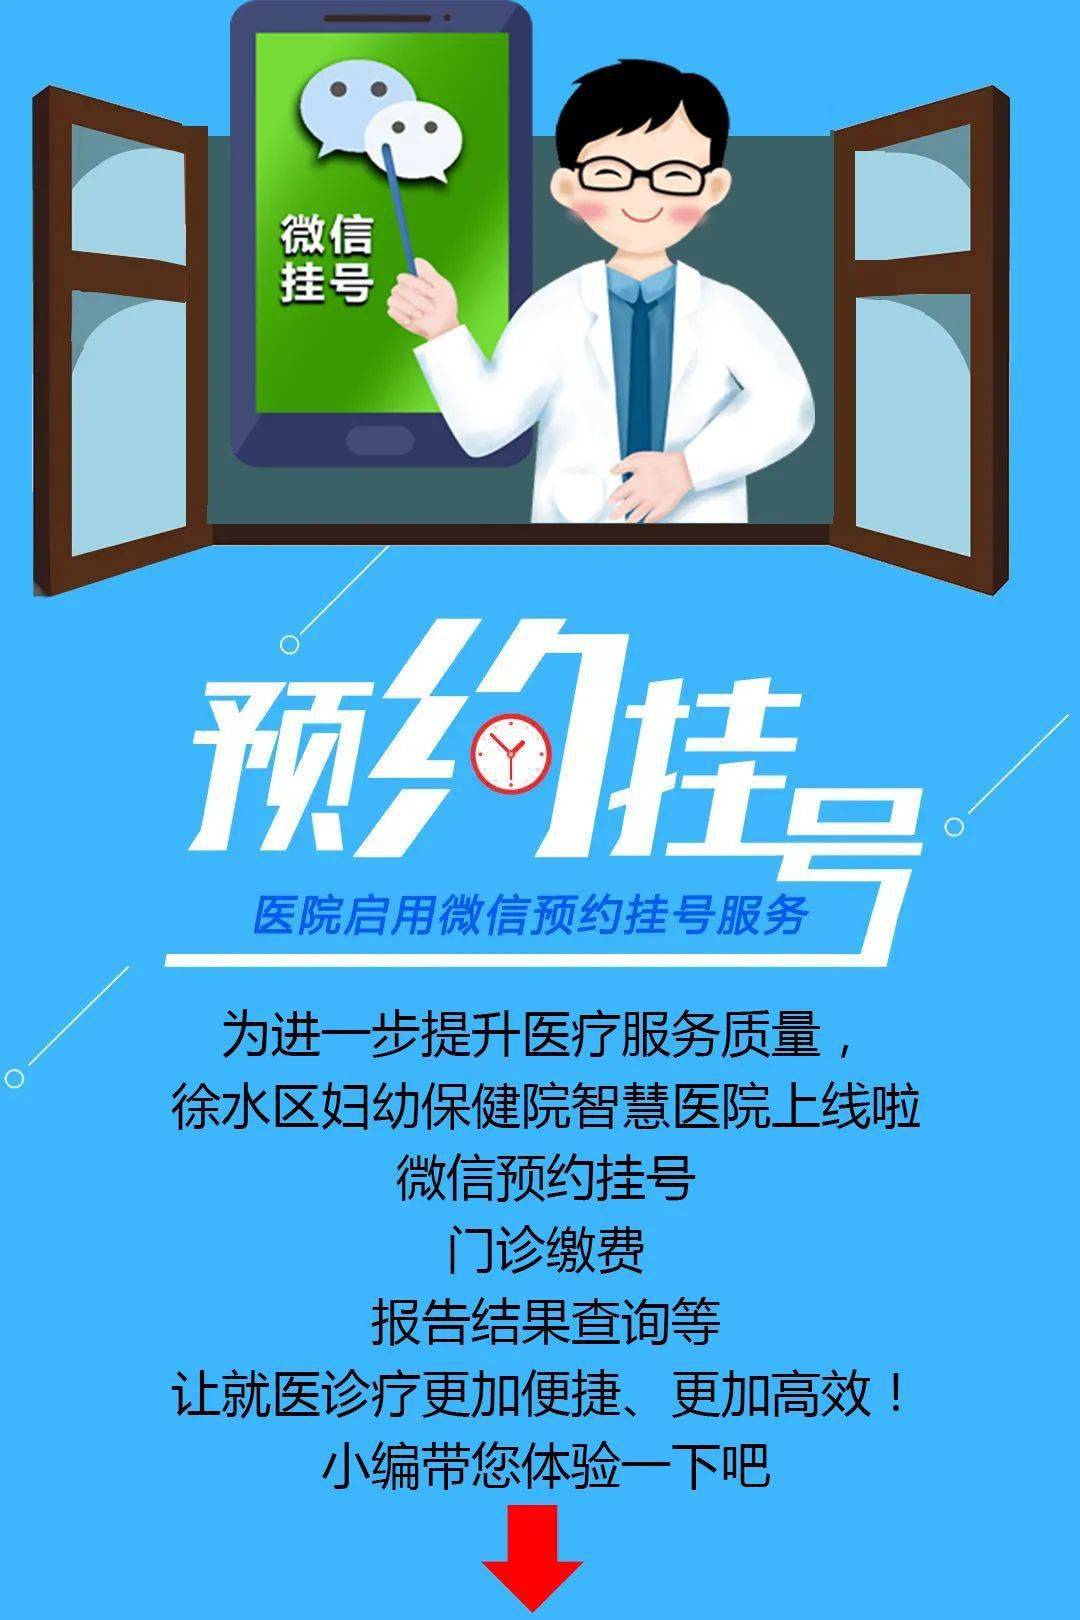 包含北京大学口腔医院黄牛挂号绿色通道代挂号的词条